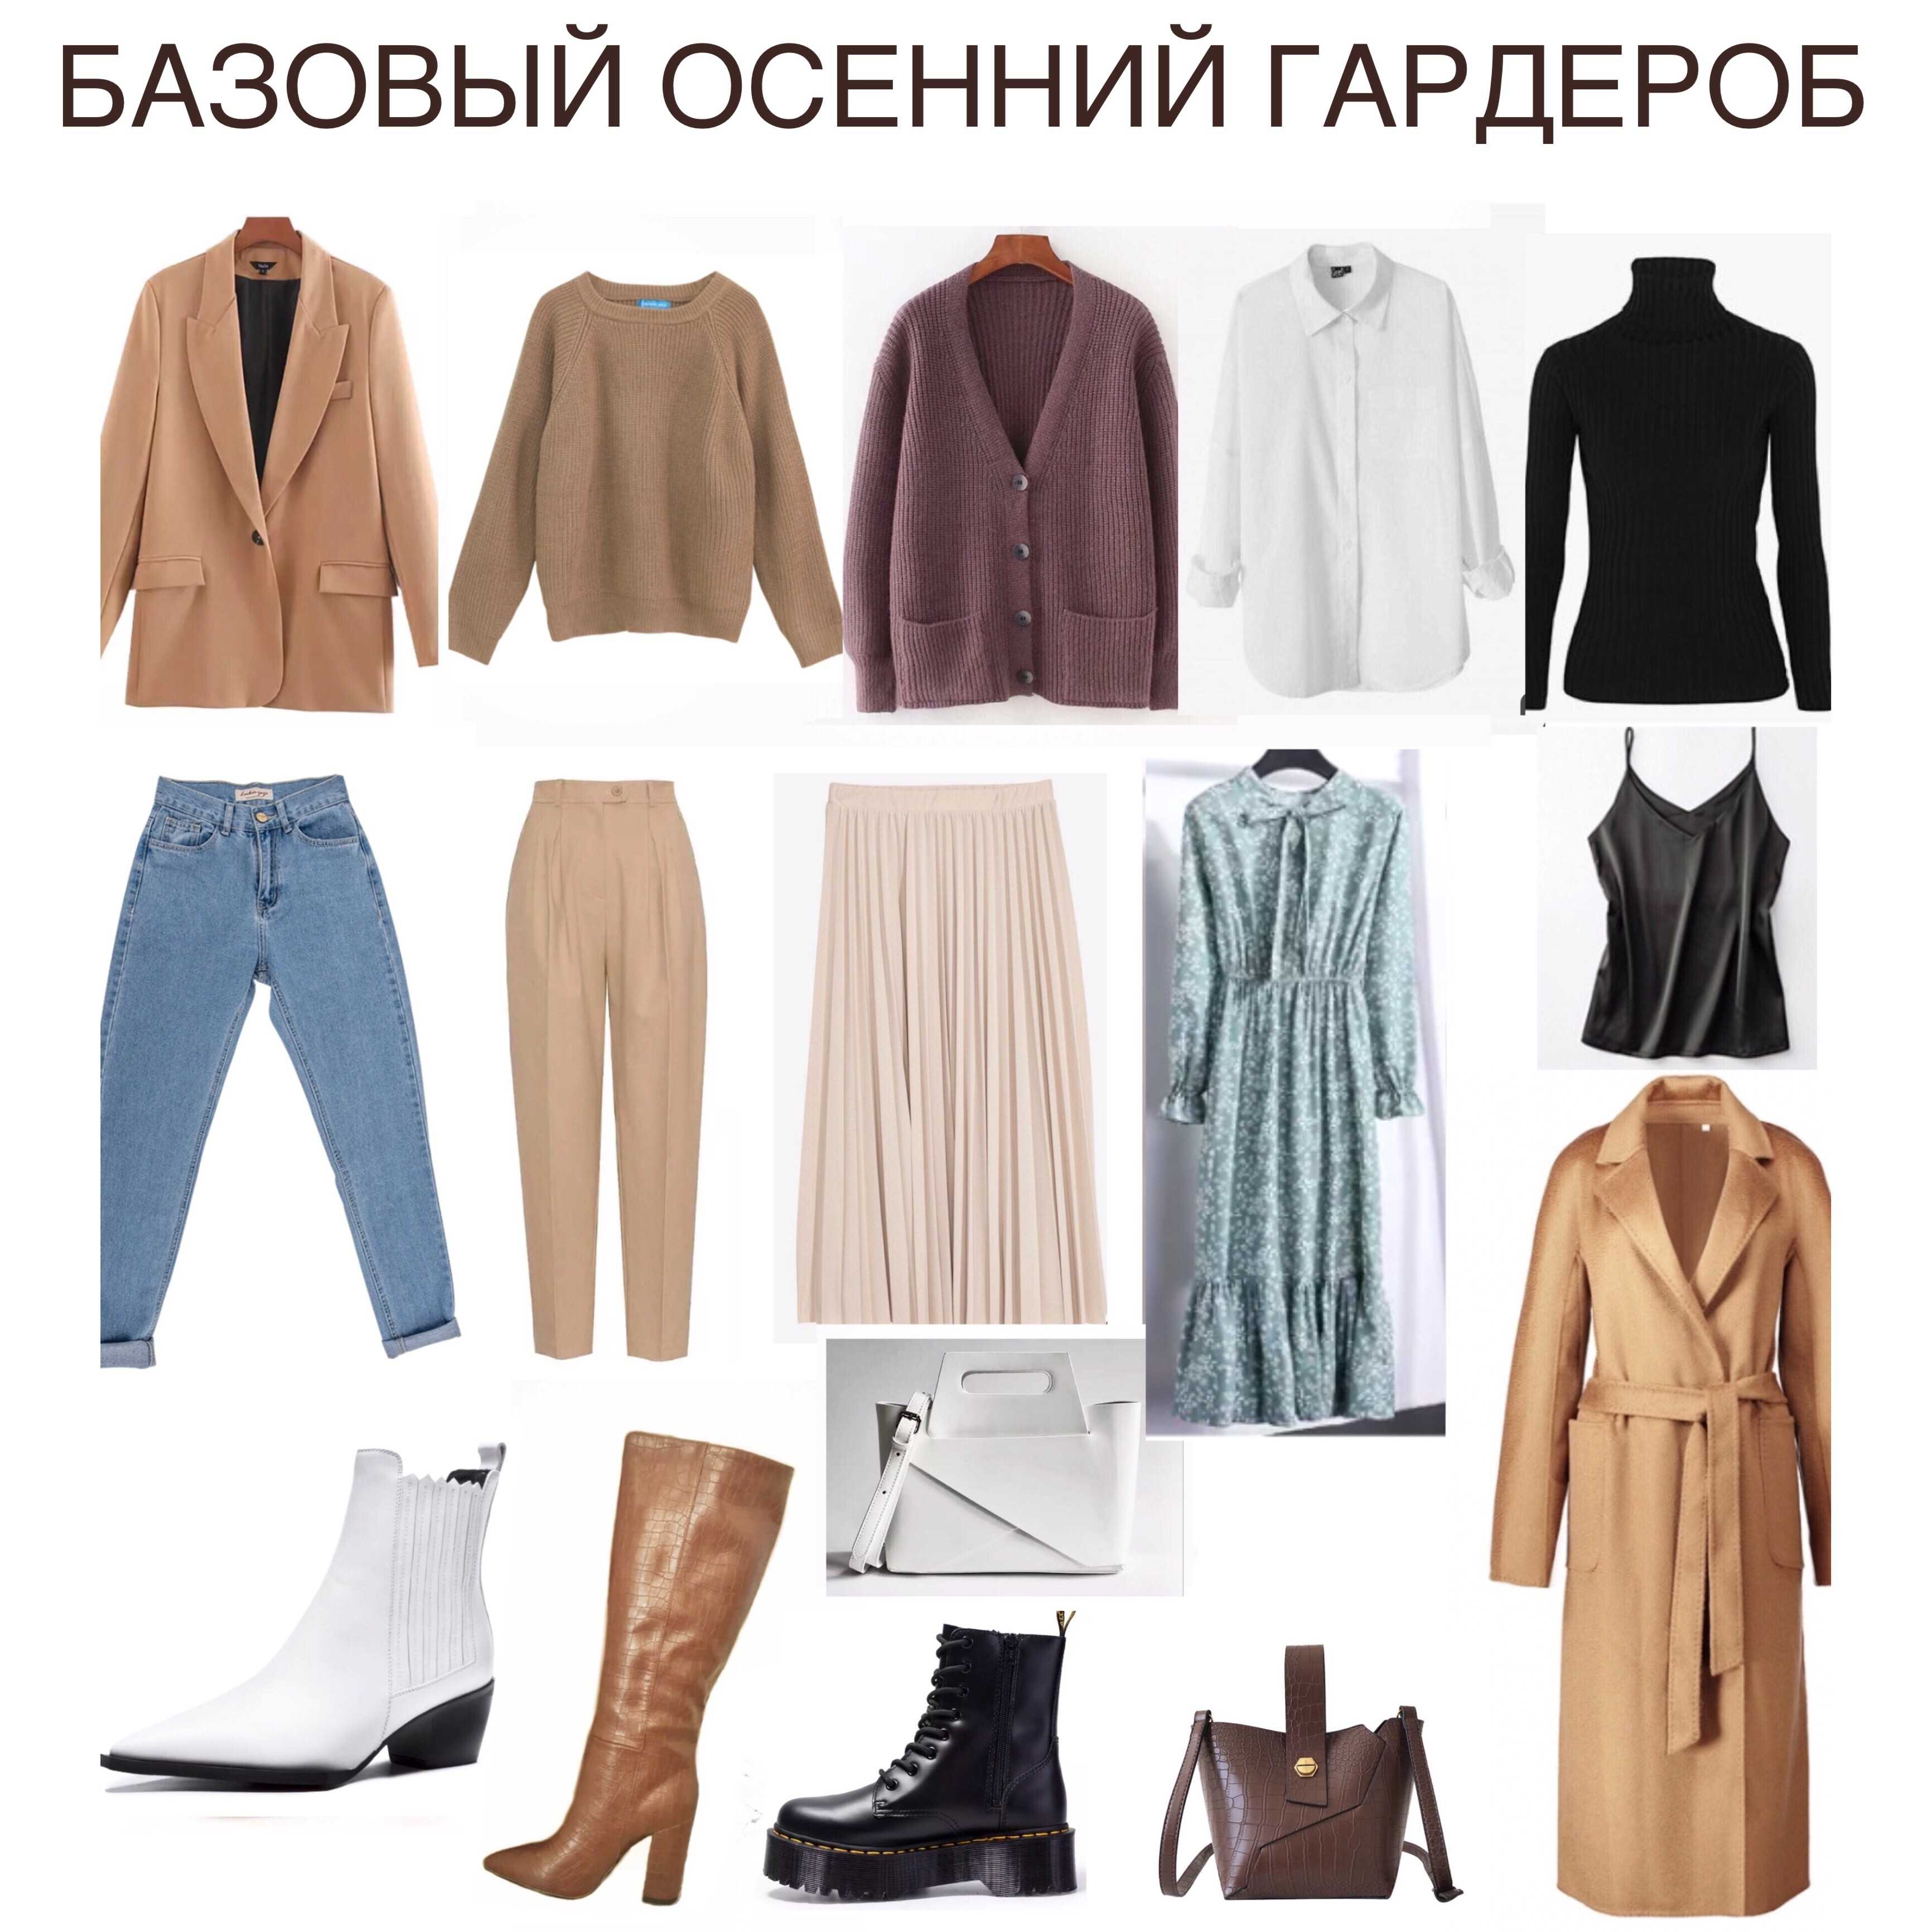 Базовый женский гардероб 2020: 100 фото модных тенденций и луков